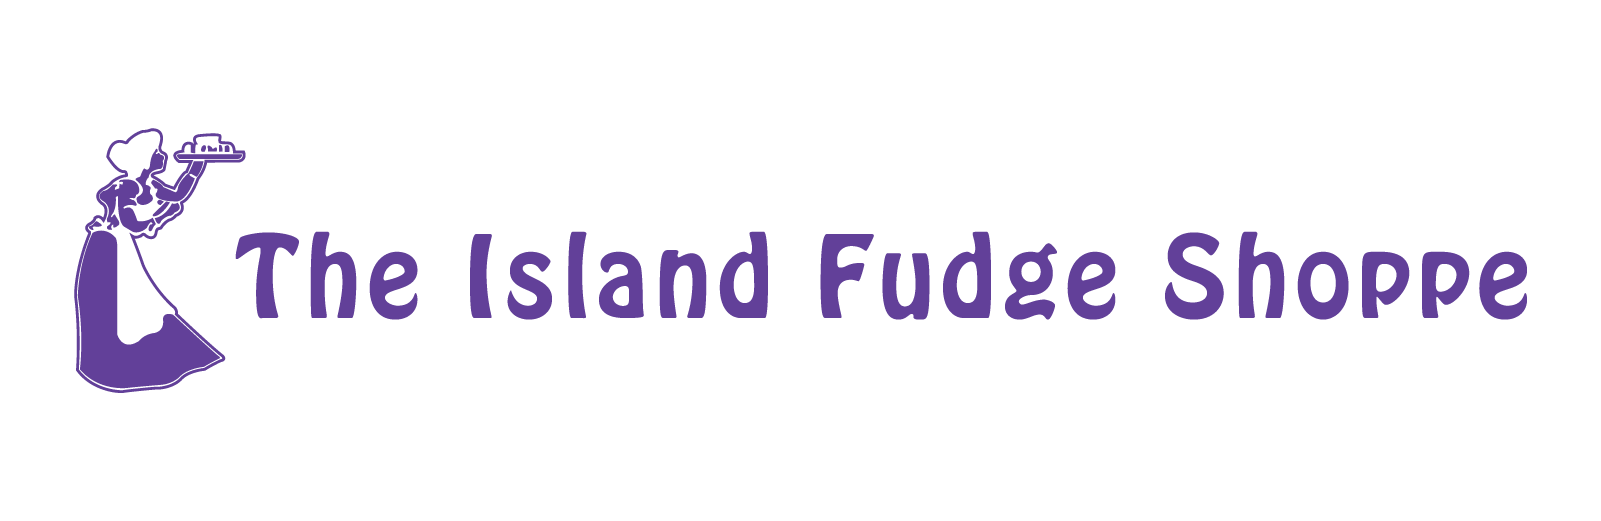 Island Fudge